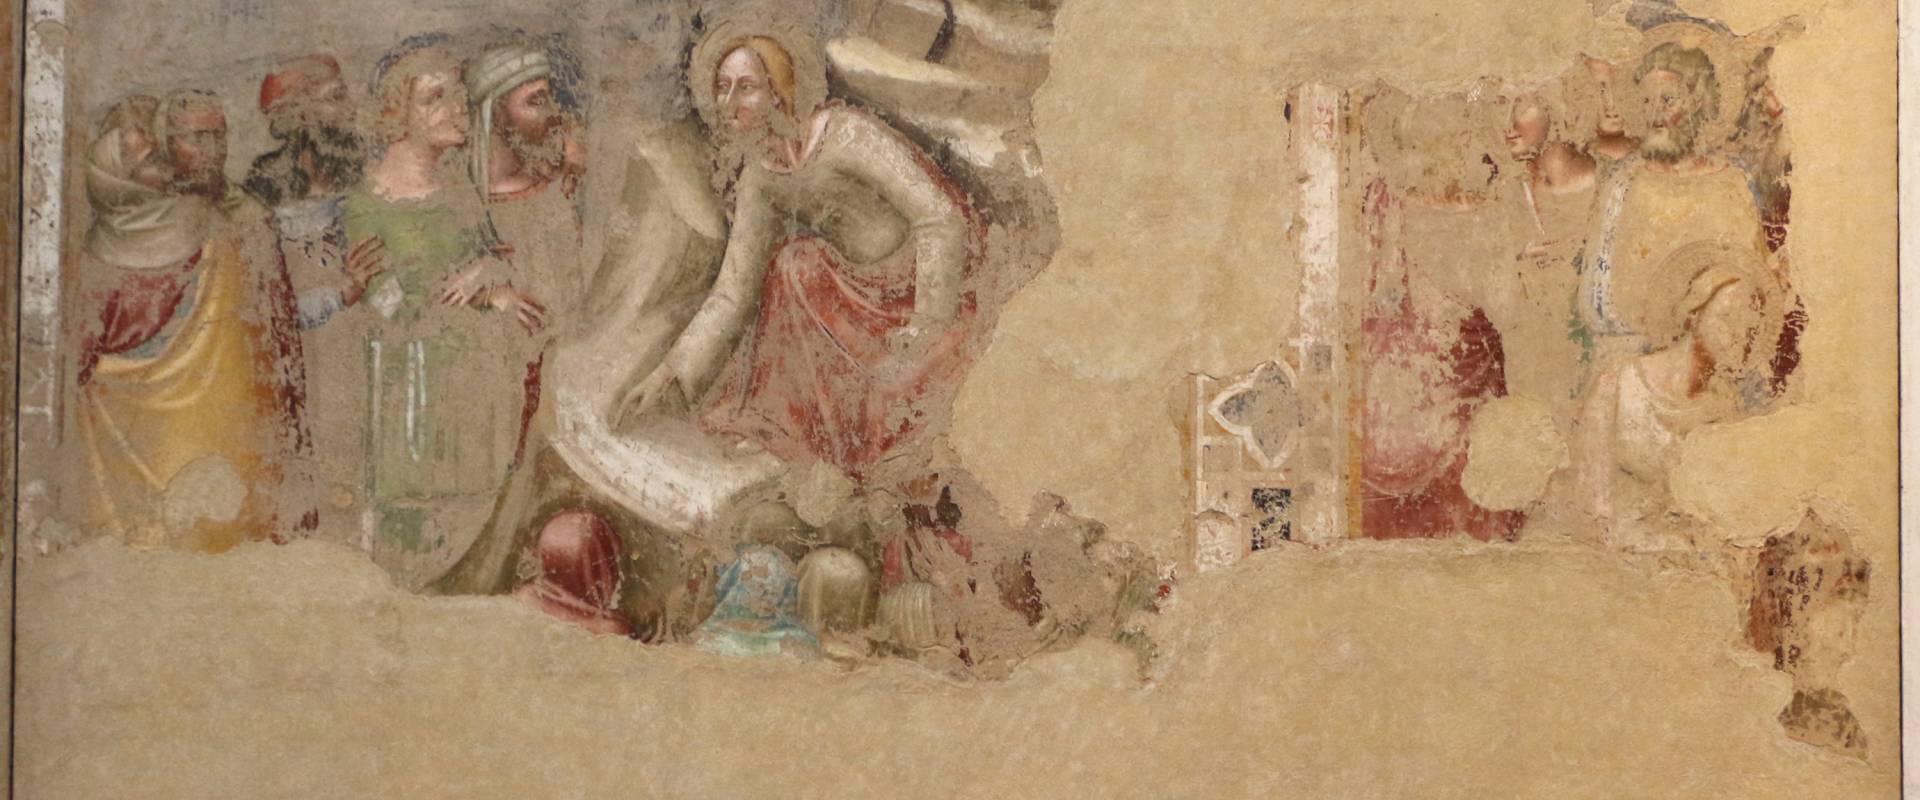 Pittori bolognesi, storie di gesù, 1330-75 ca., 03, da oratorio di mezzaratta photo by Sailko